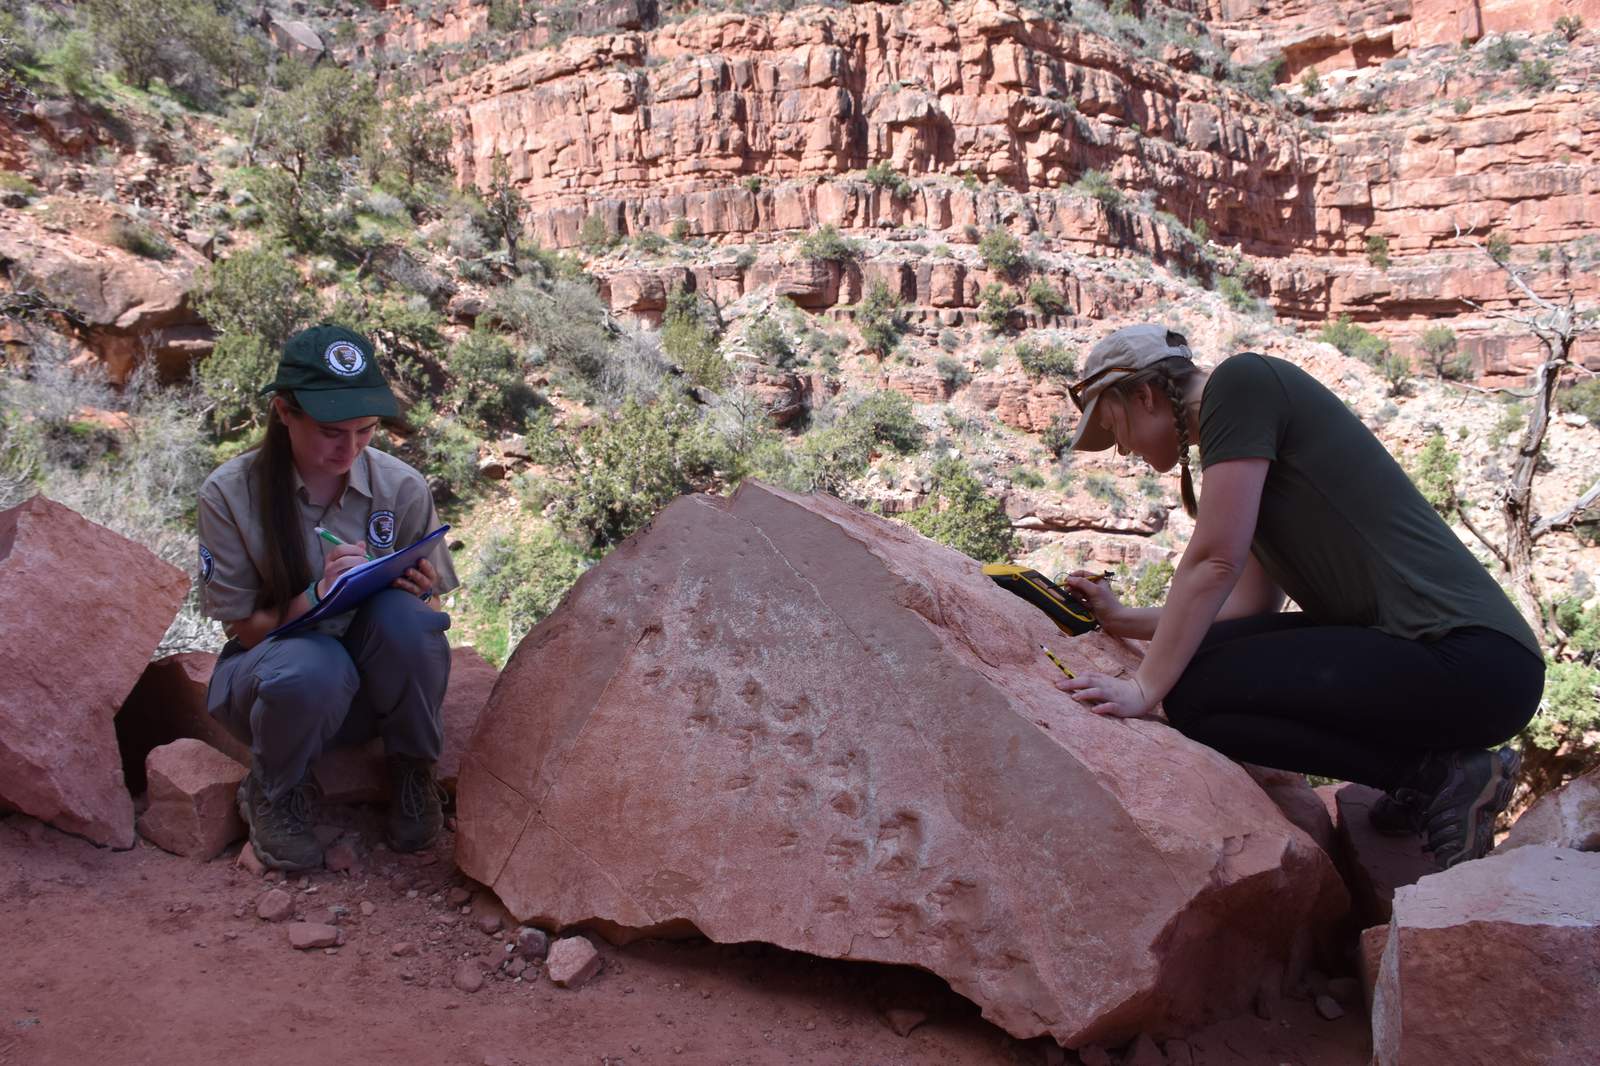 Rock fall at Grand Canyon reveals ancient animal footprints